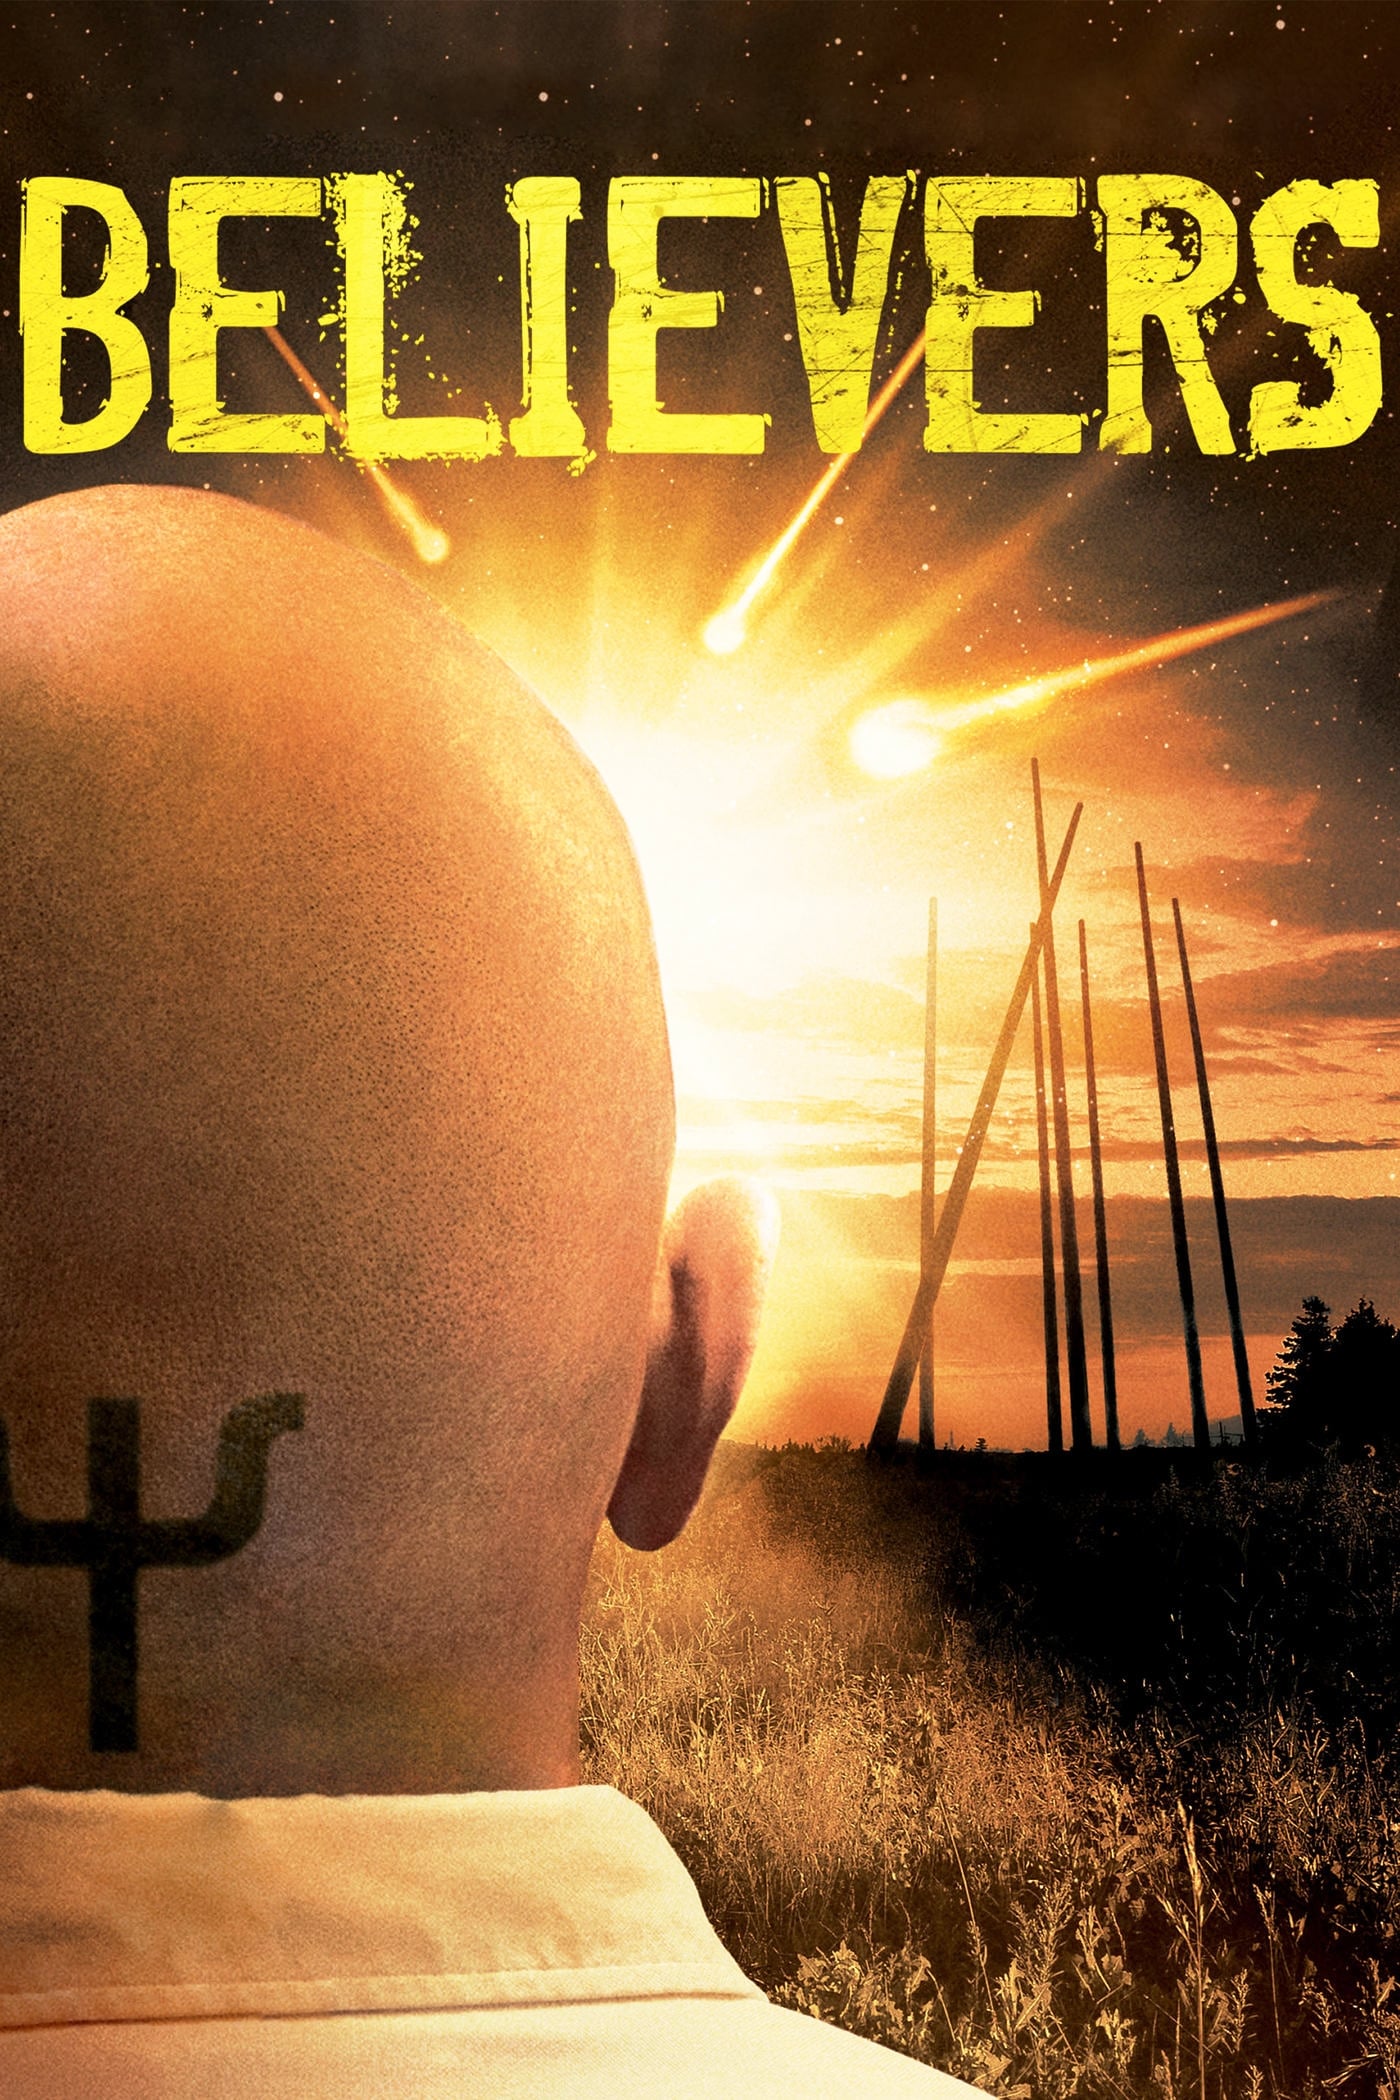 Believers (2007)